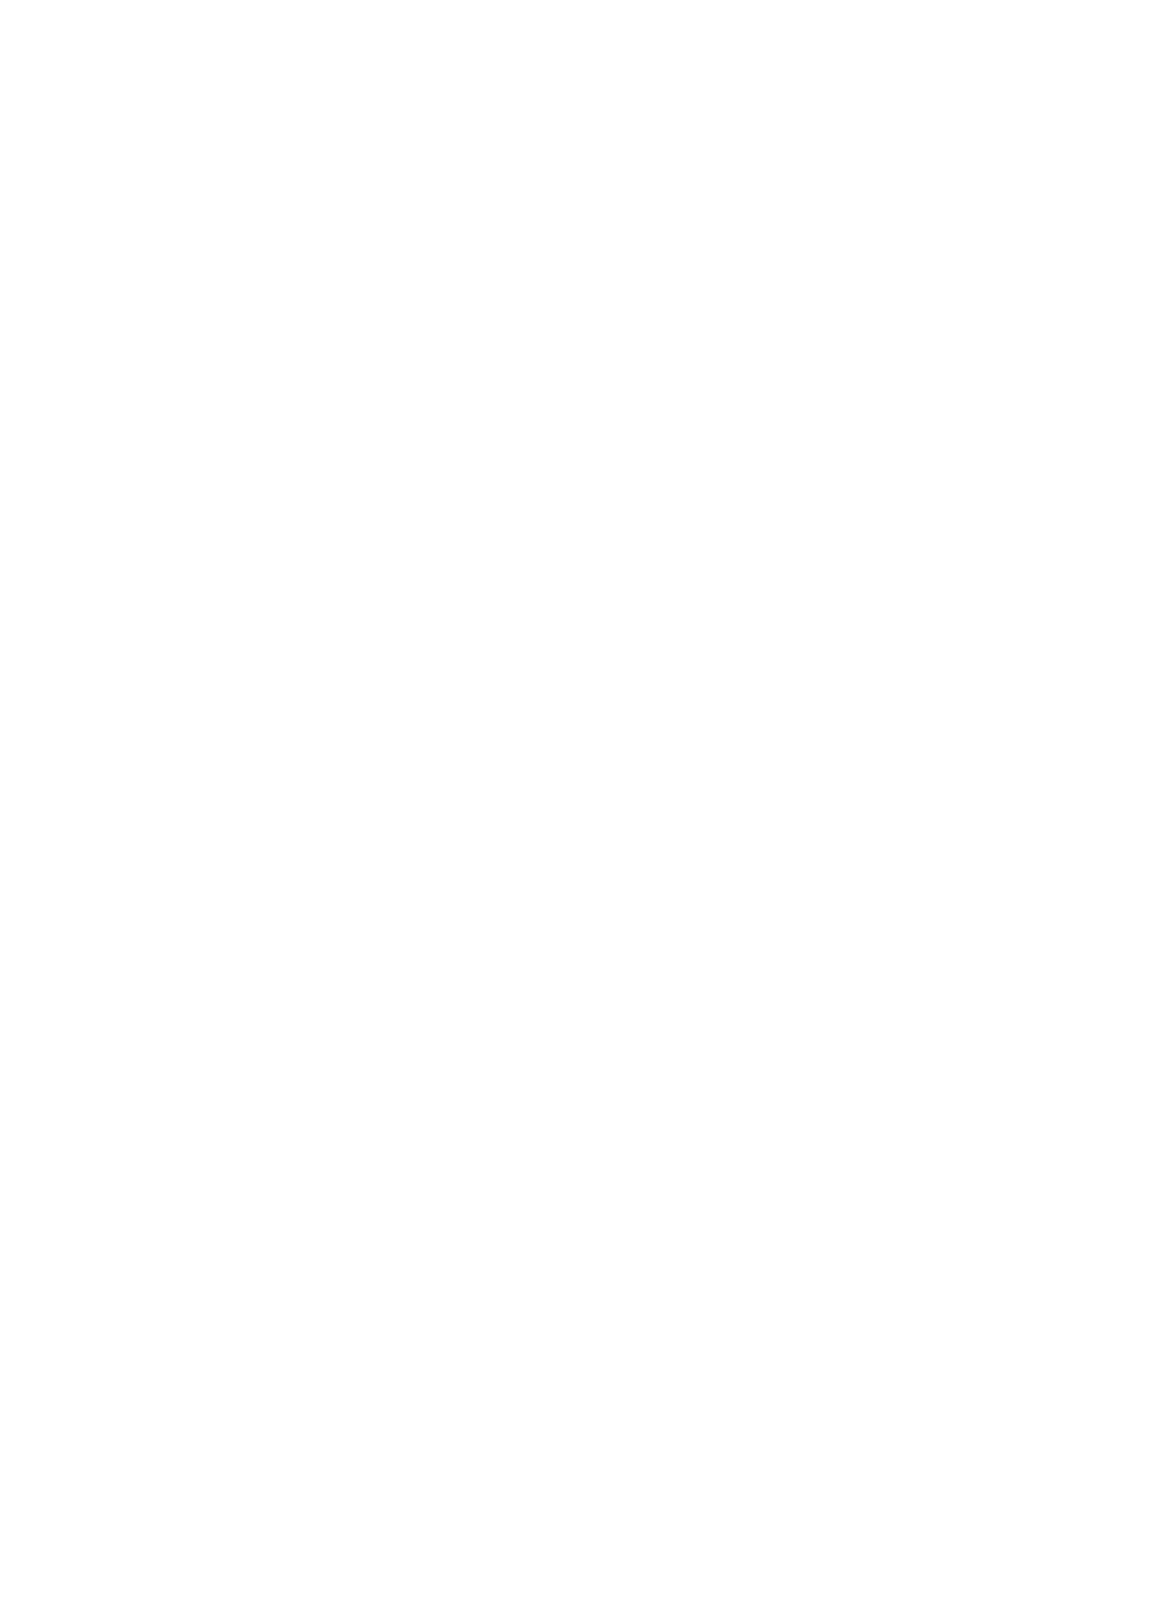 K91 HYBRID TRAINING